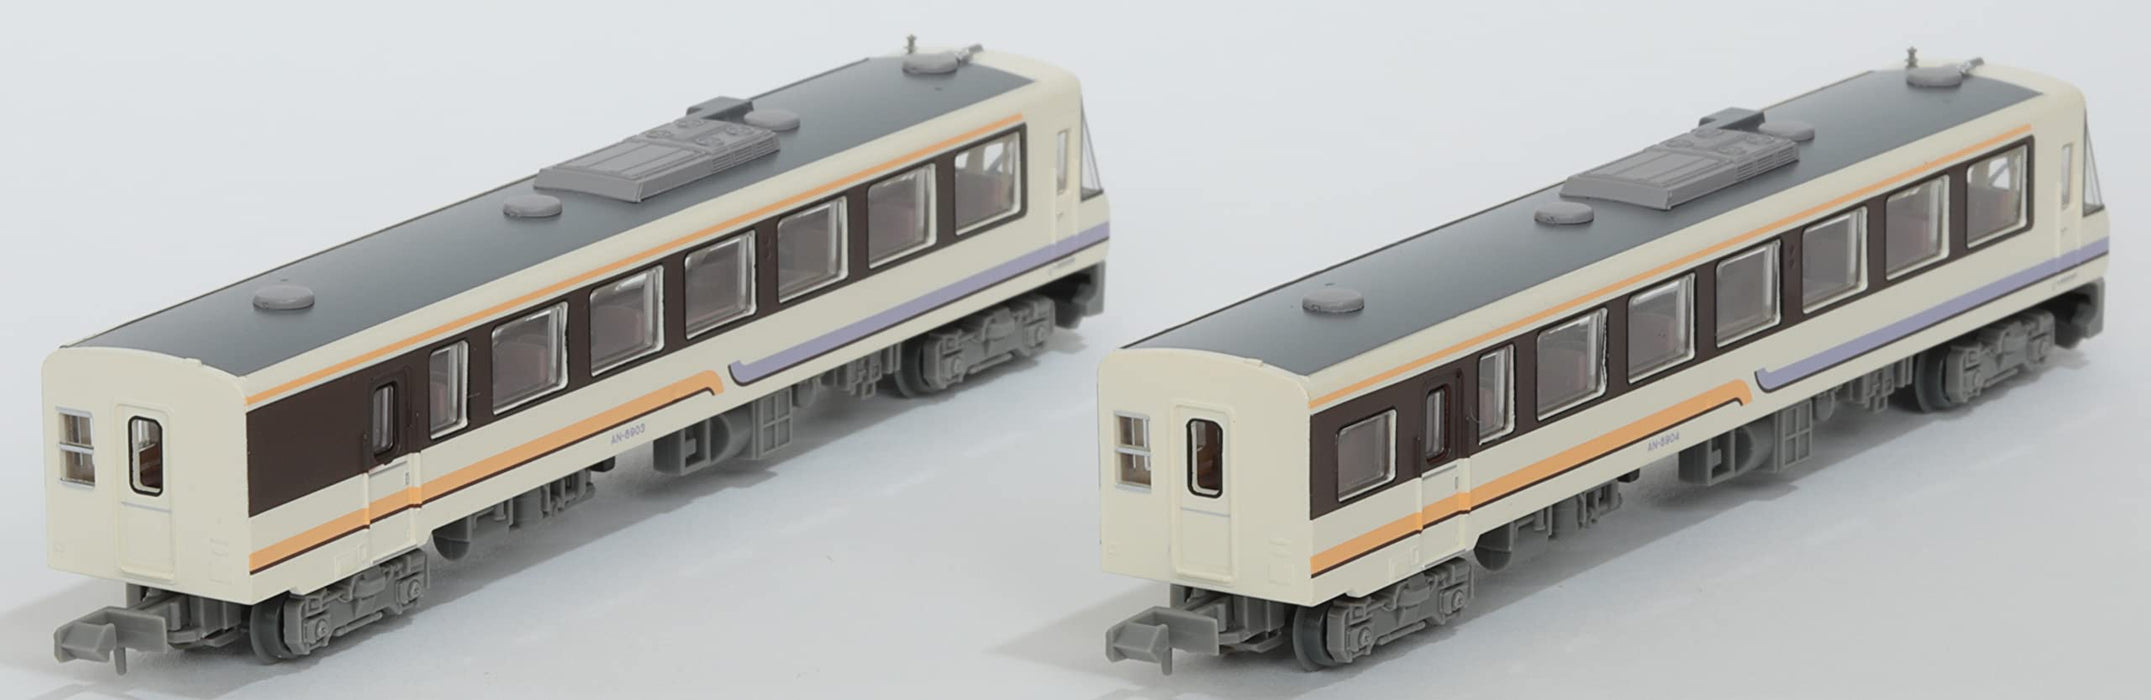 Tomytec Akita Nairiku Jukan Railway An8900 2-Car Set Original Color Diorama Supplies